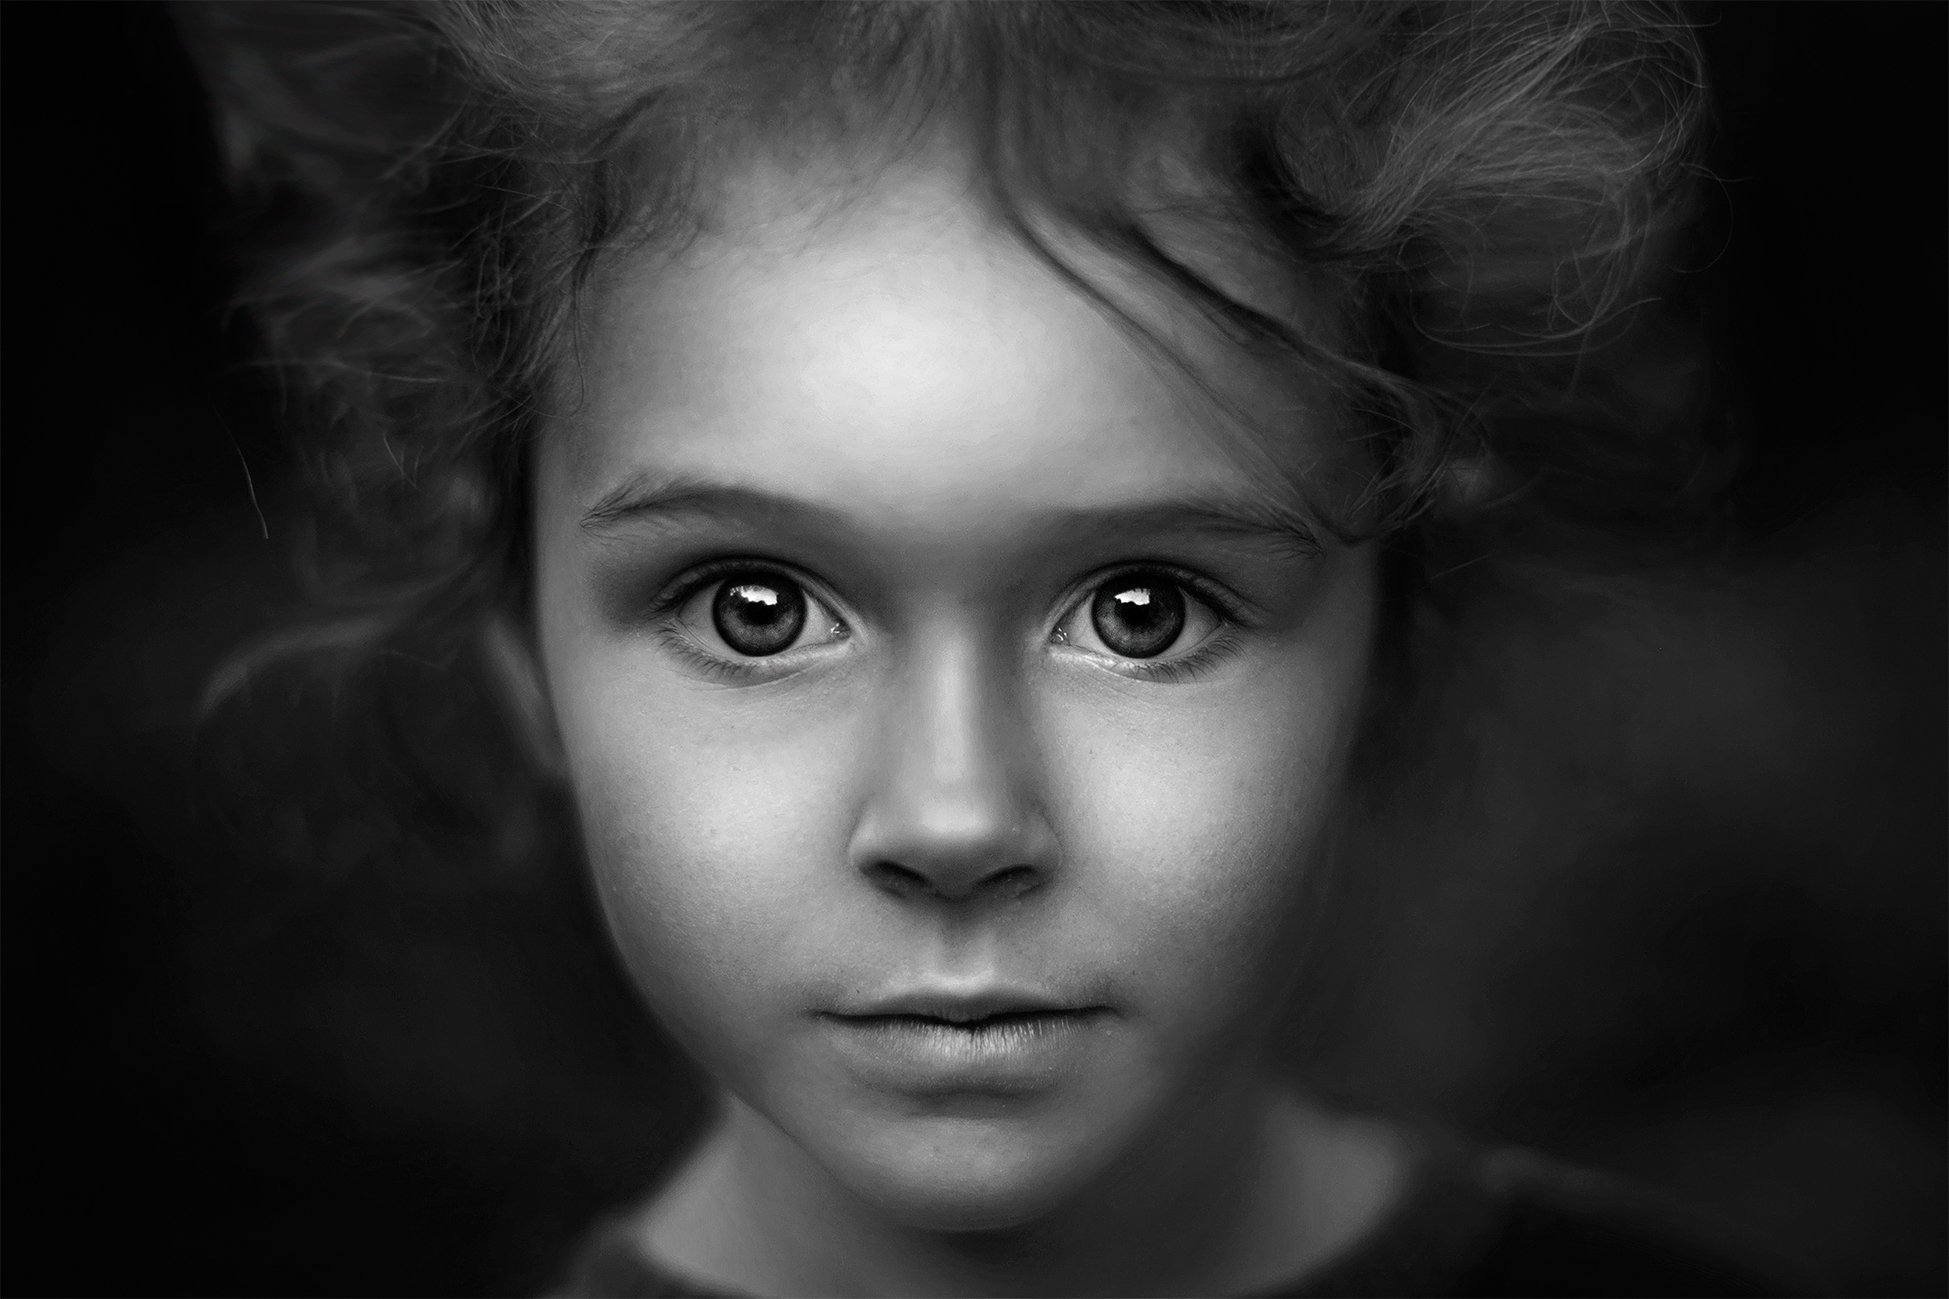 портрет глаза лицо образ чб девушка девочка, Липатова Анна